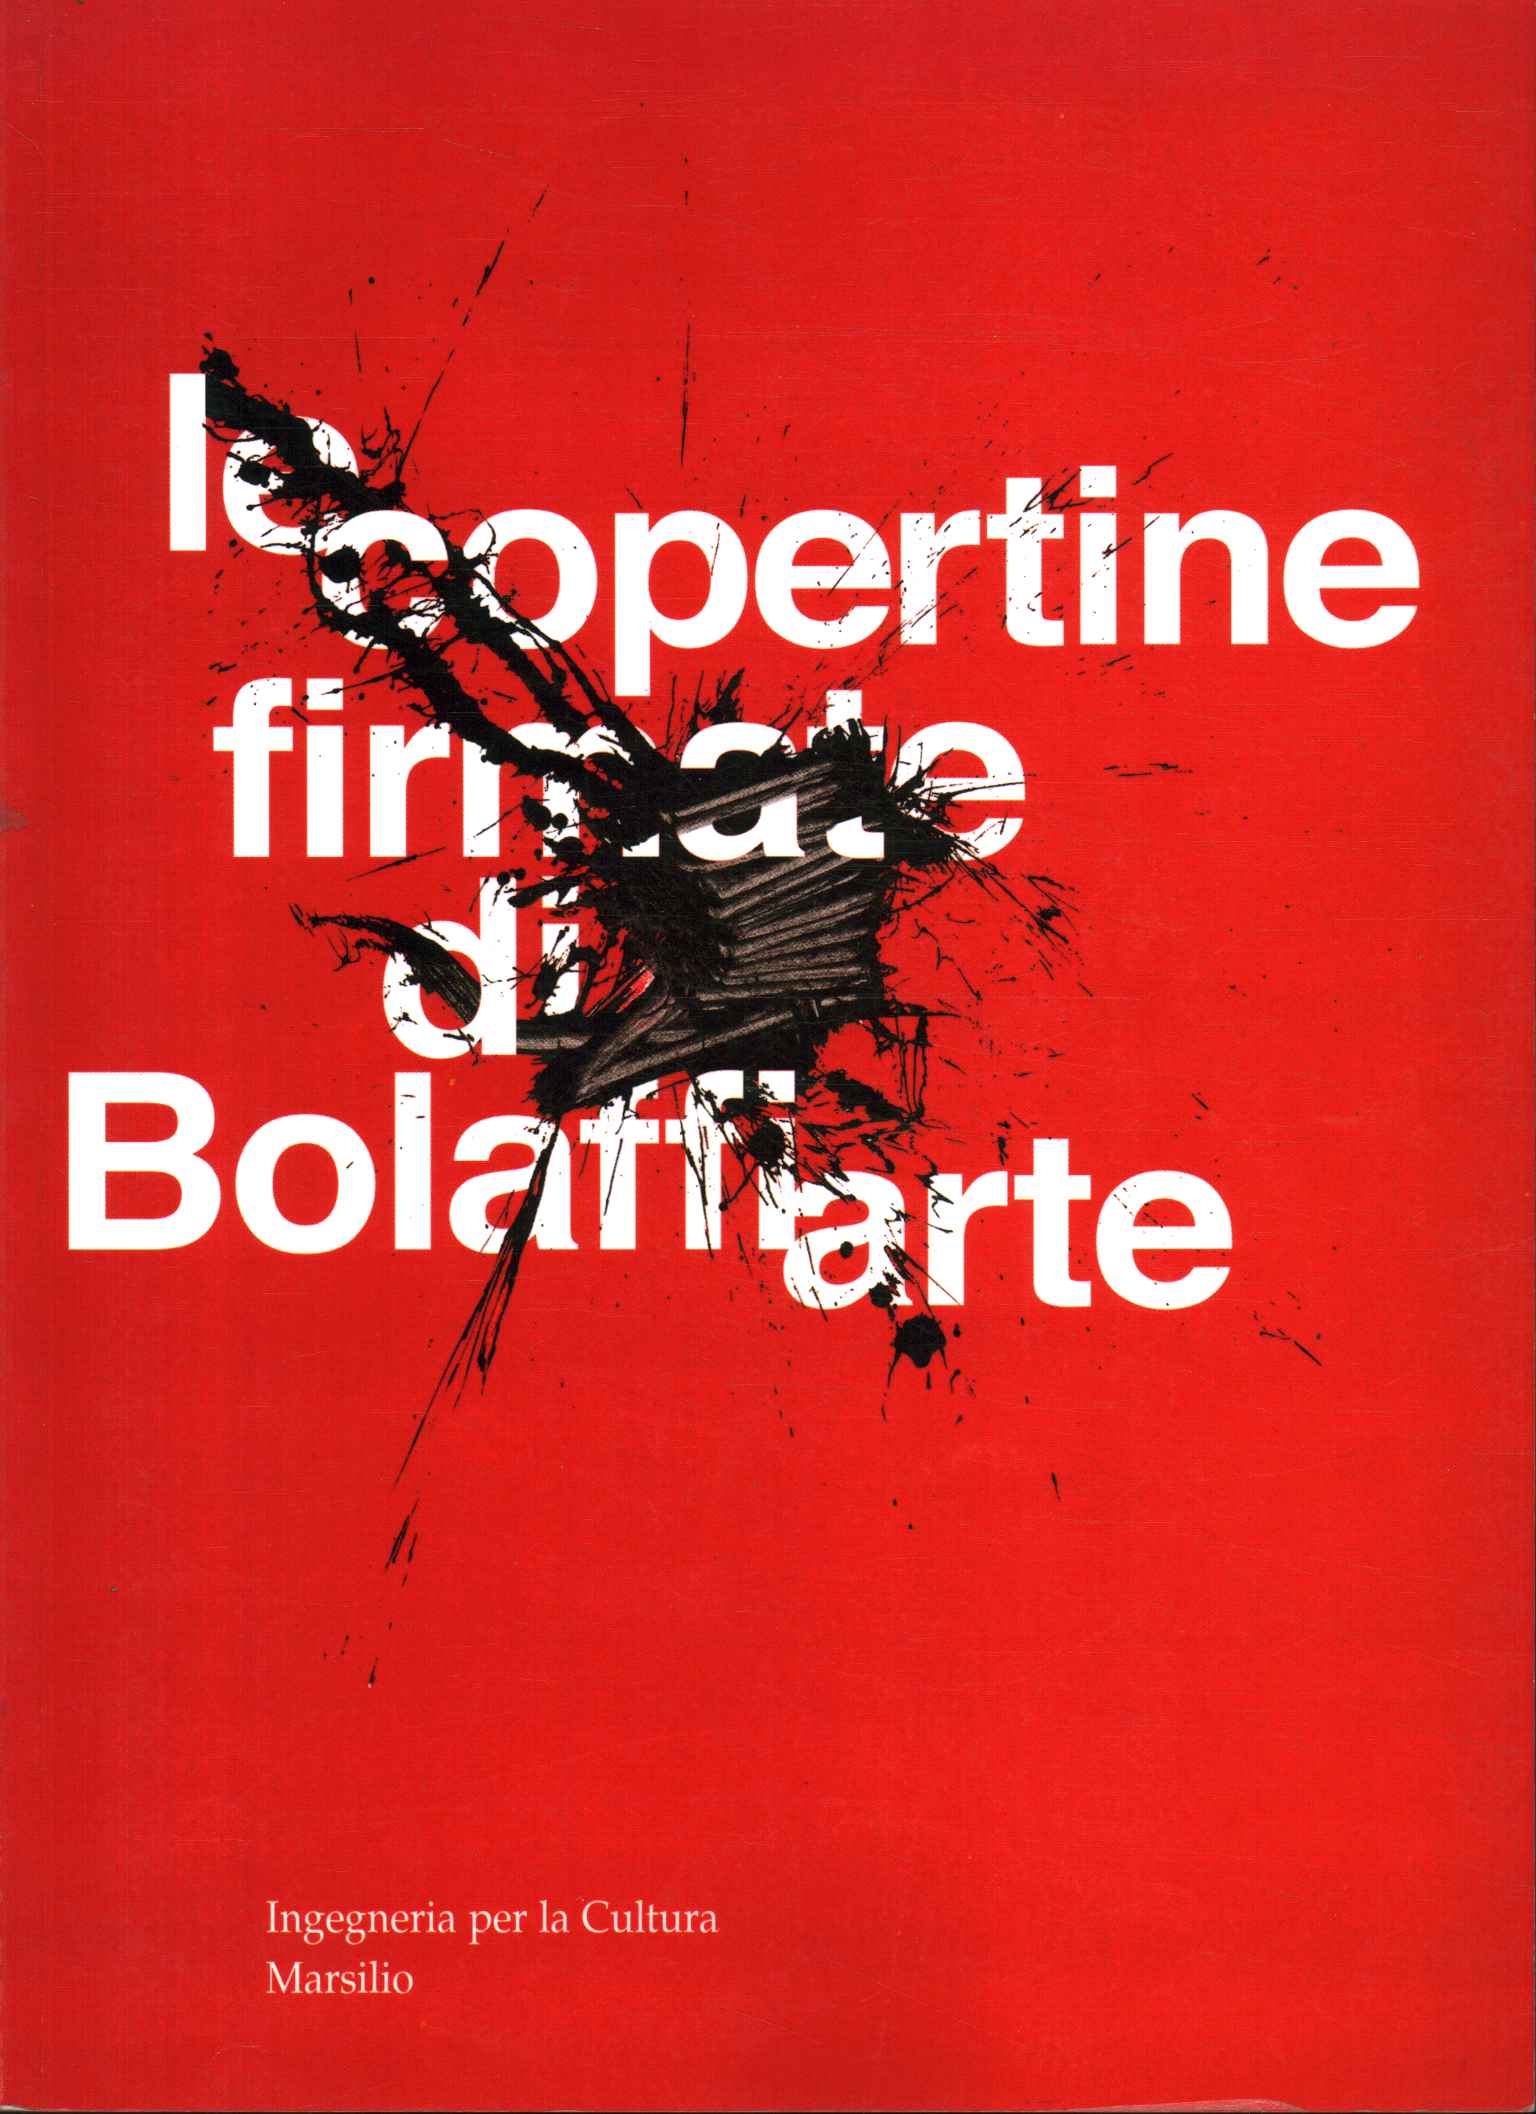 Las portadas firmadas de Bolaffiarte